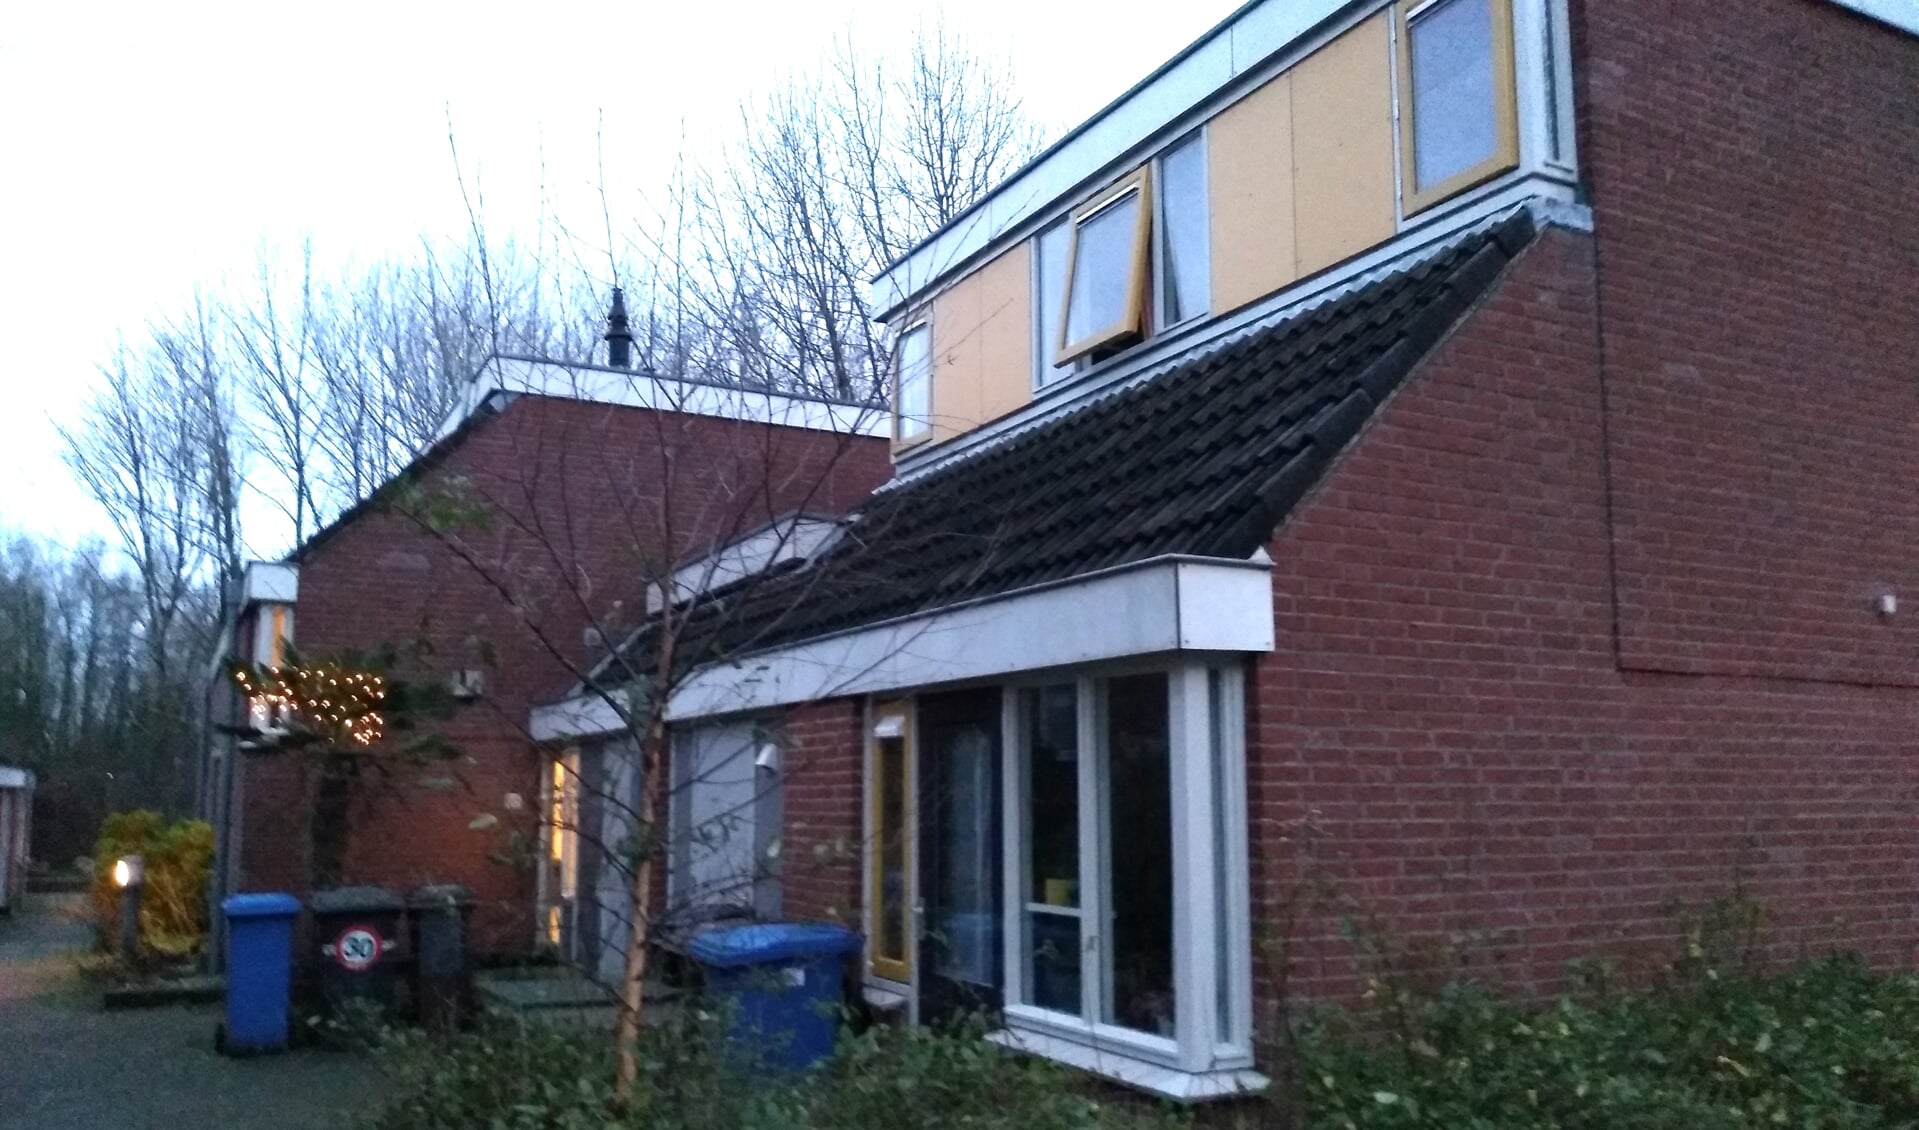 Aan de Langstraat in Bunnik staan 36 sociale huurwoningen van Portaal. Een flink aantal bewoners is ontevreden over de mate van isolatie van de woningen.